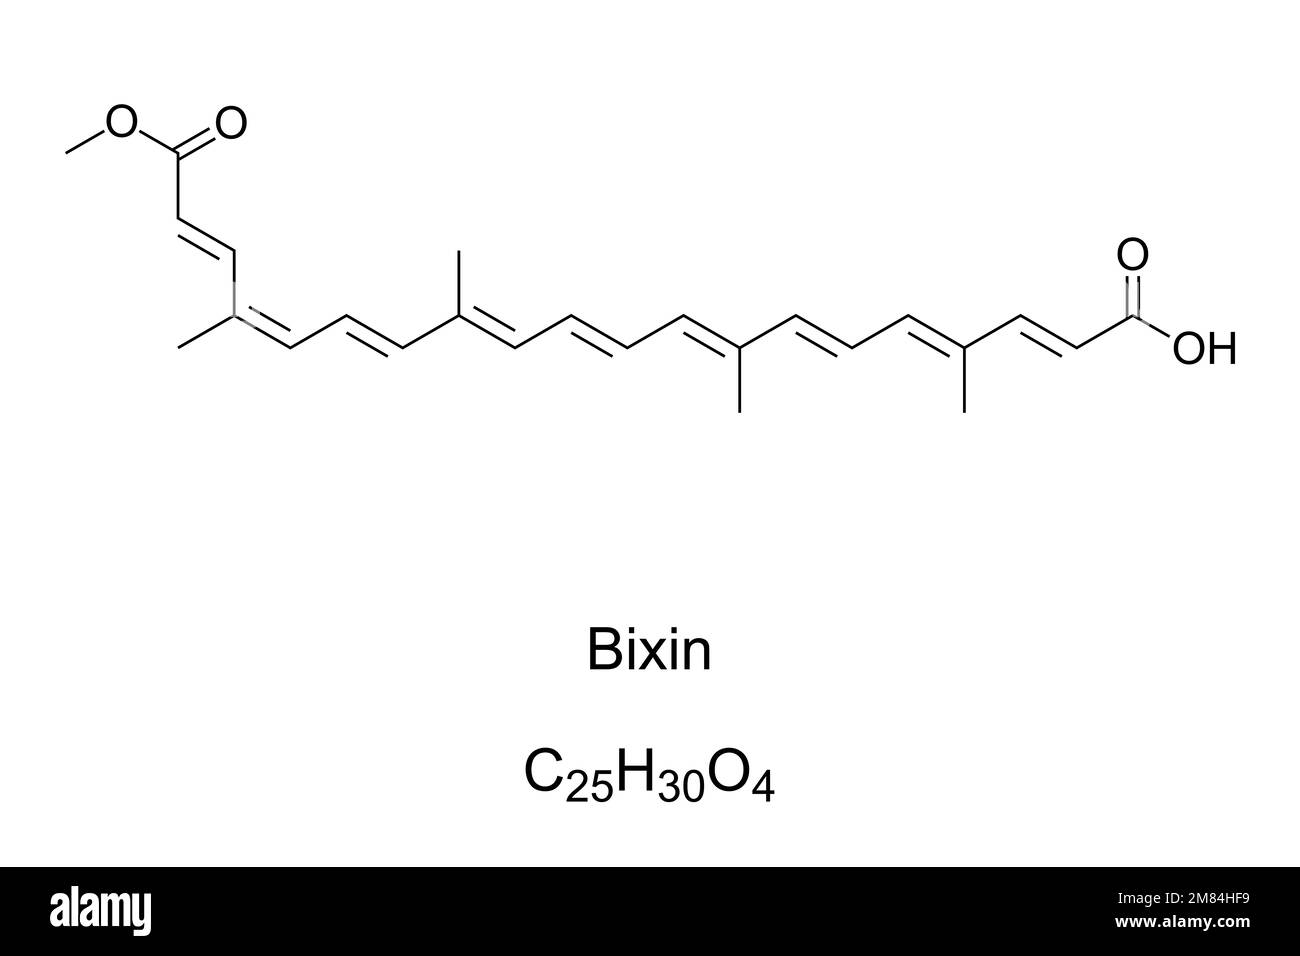 Bixina, cis o alfa-bixina, fórmula química. Carotenoide extraído de las semillas del árbol de achiote, Bixa orellana, para formar annatto, un pigmento natural. Foto de stock